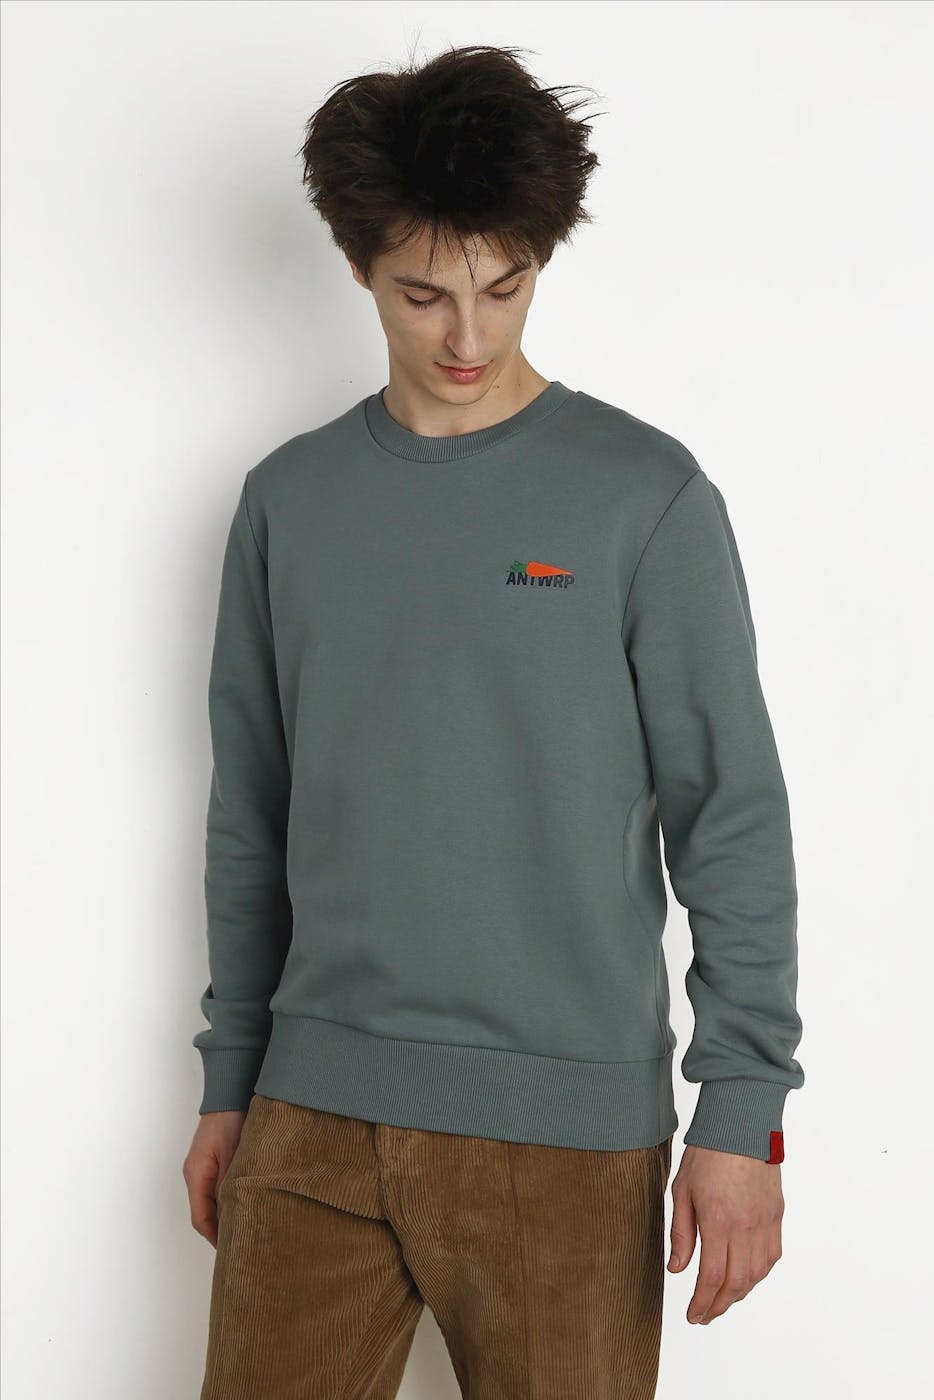 Antwrp - Groene Wortel sweater